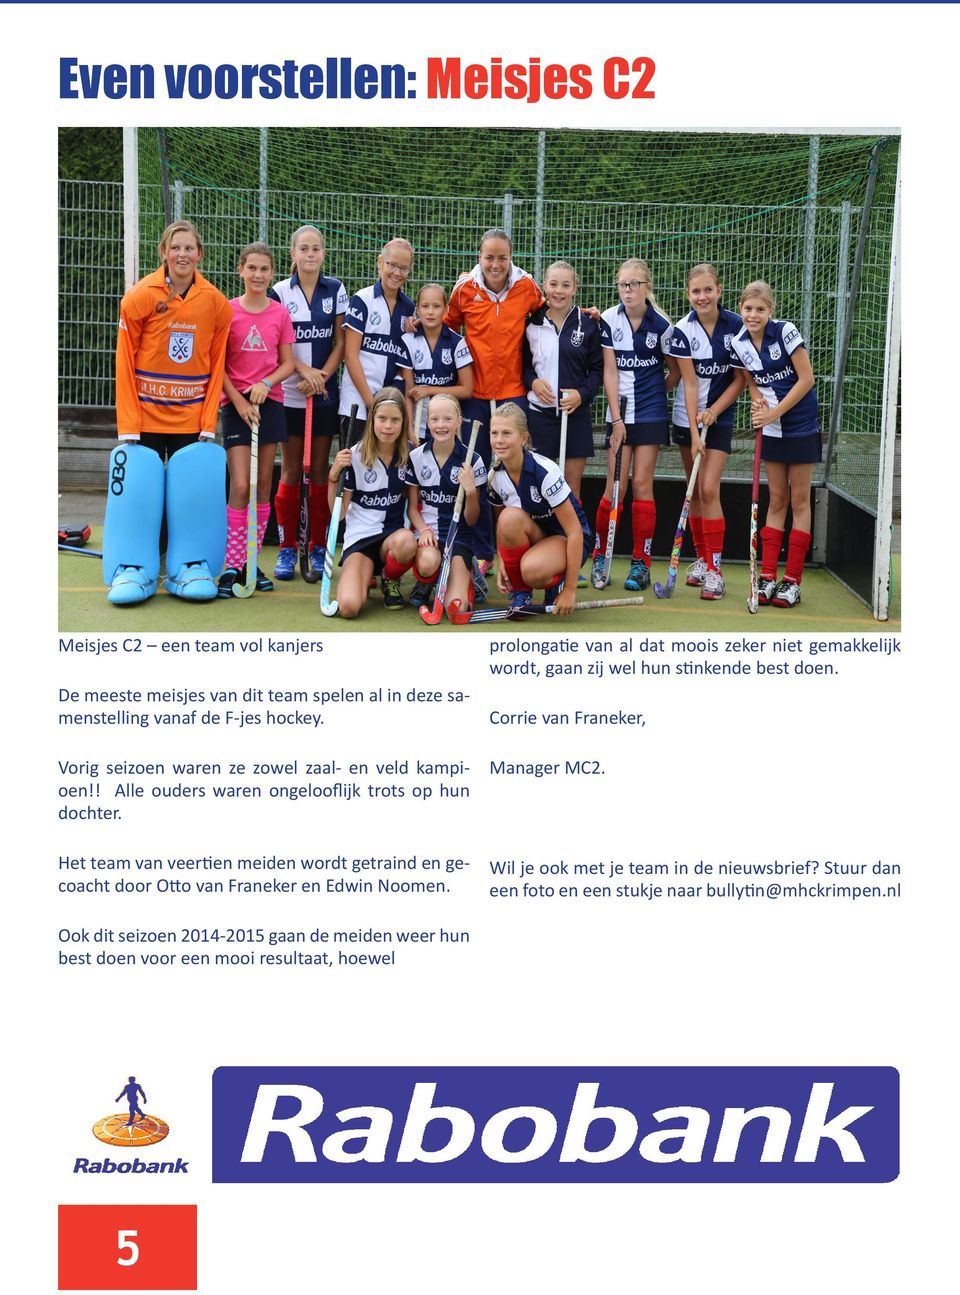 Het team van veertien meiden wordt getraind en gecoacht door Otto van Franeker en Edwin Noomen.